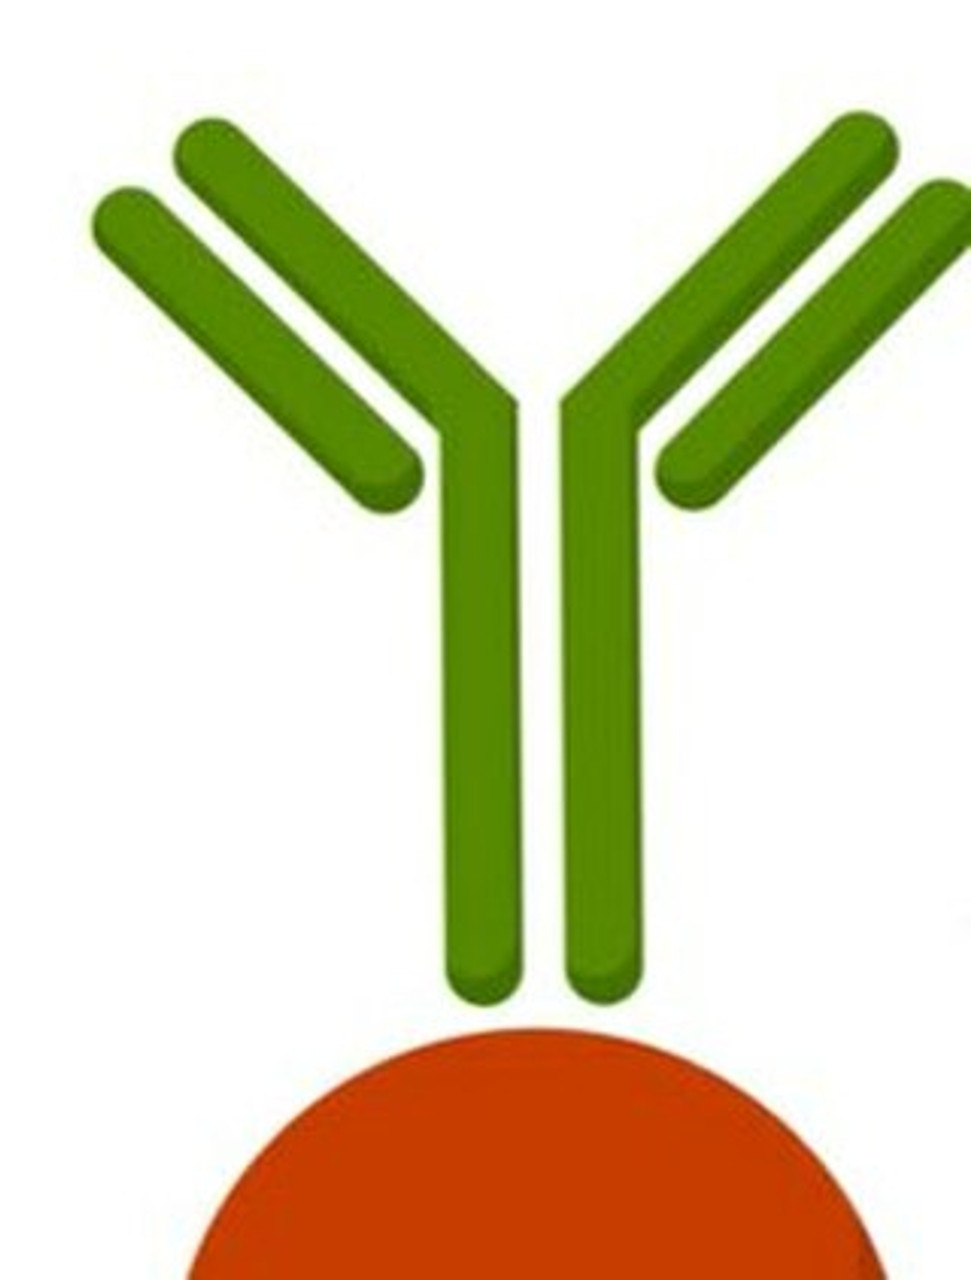 Anti-ABCA7 antibody